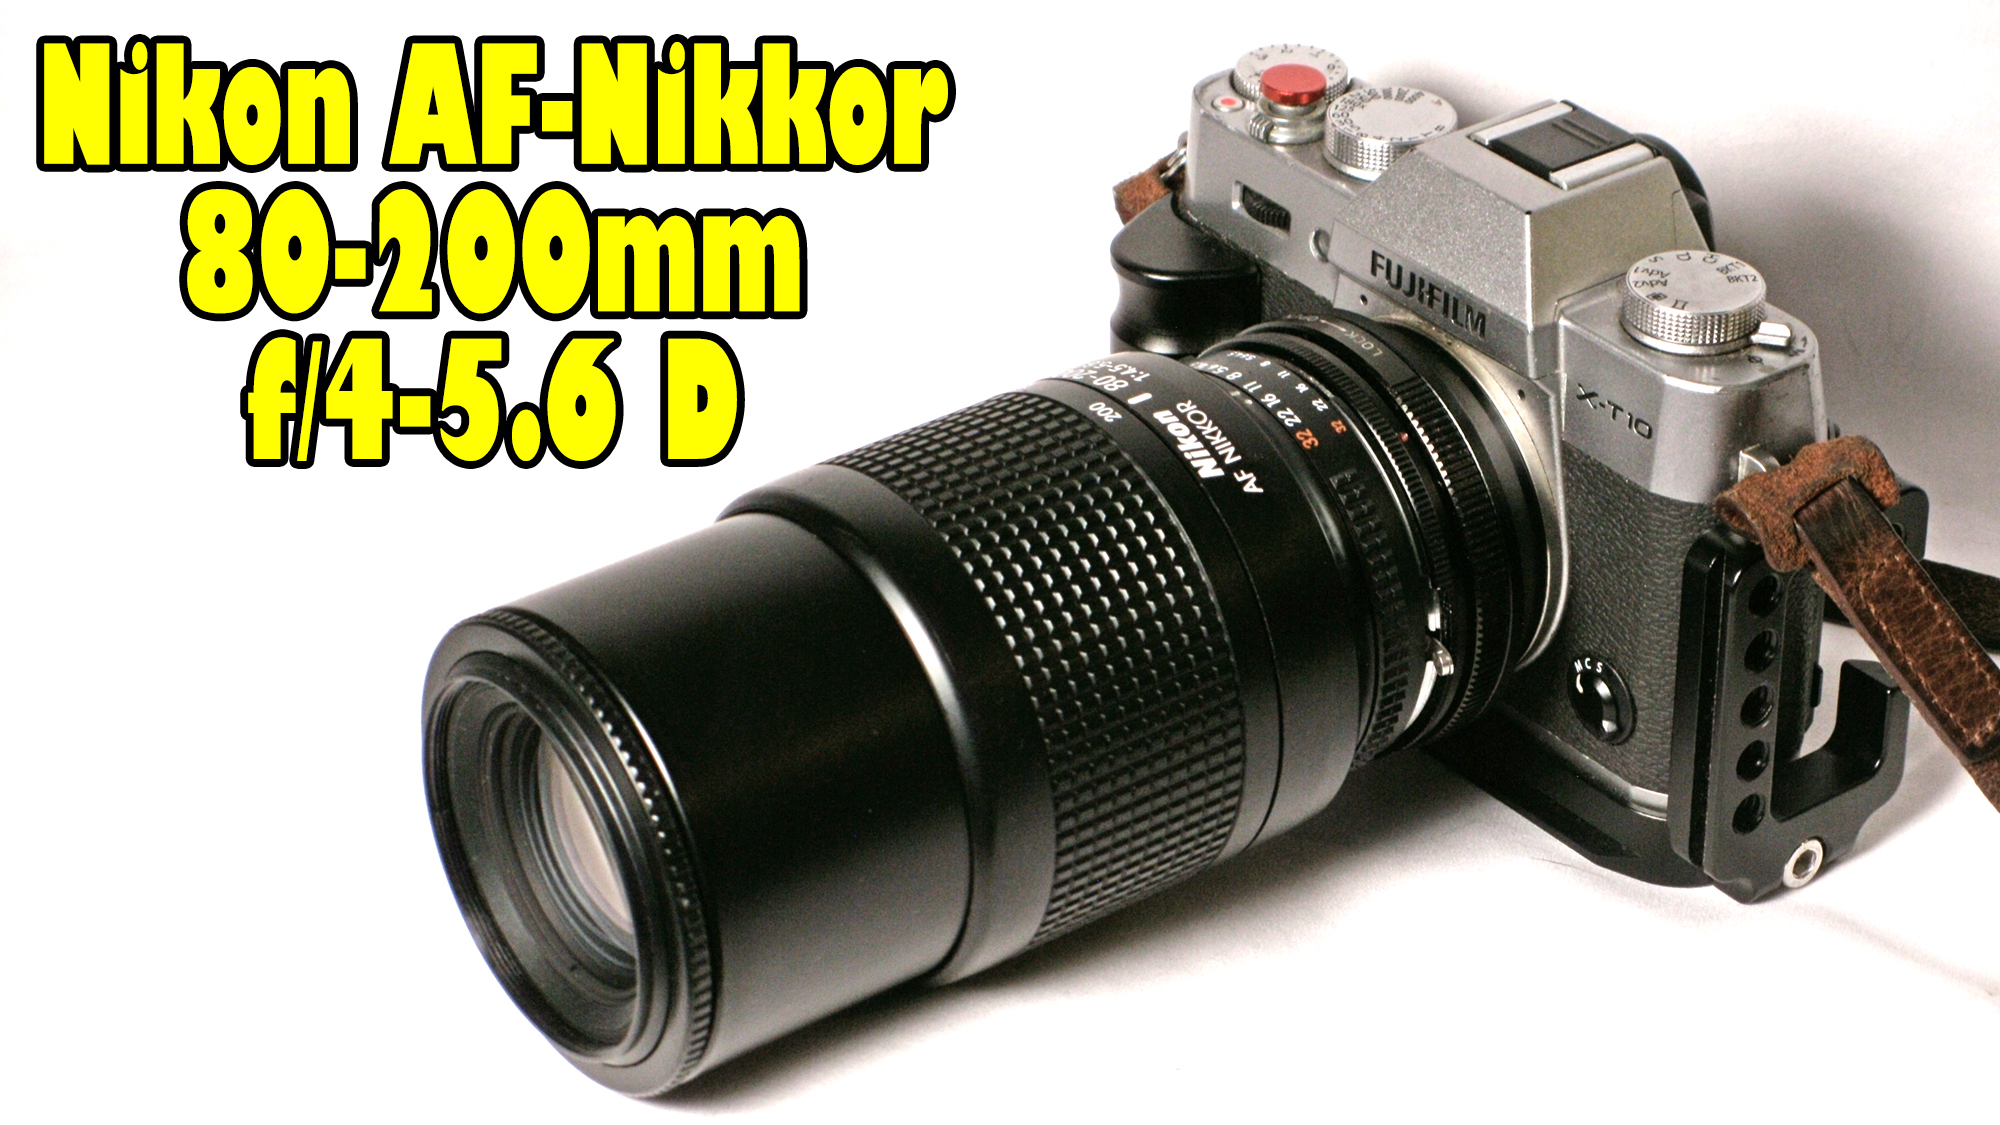 Nikon AF-Nikkor 80-200mm f/4.5-5.6D (1995-1999)